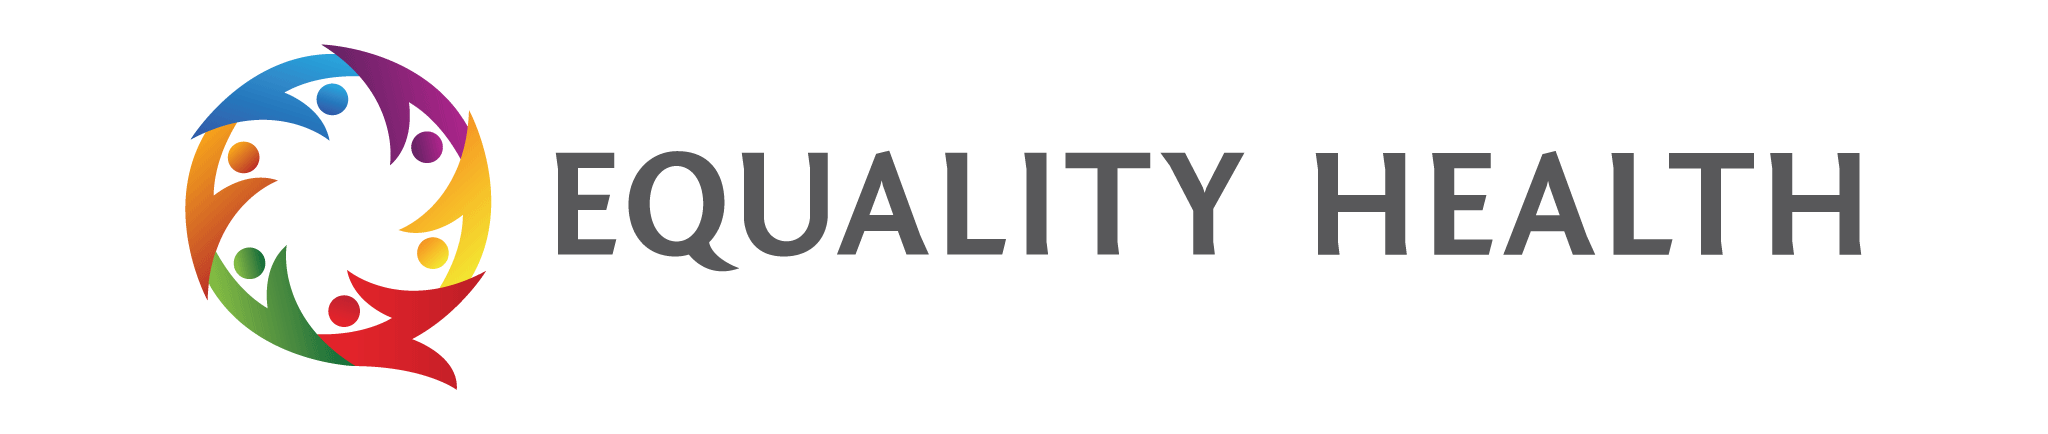 equality health logos horizontal color